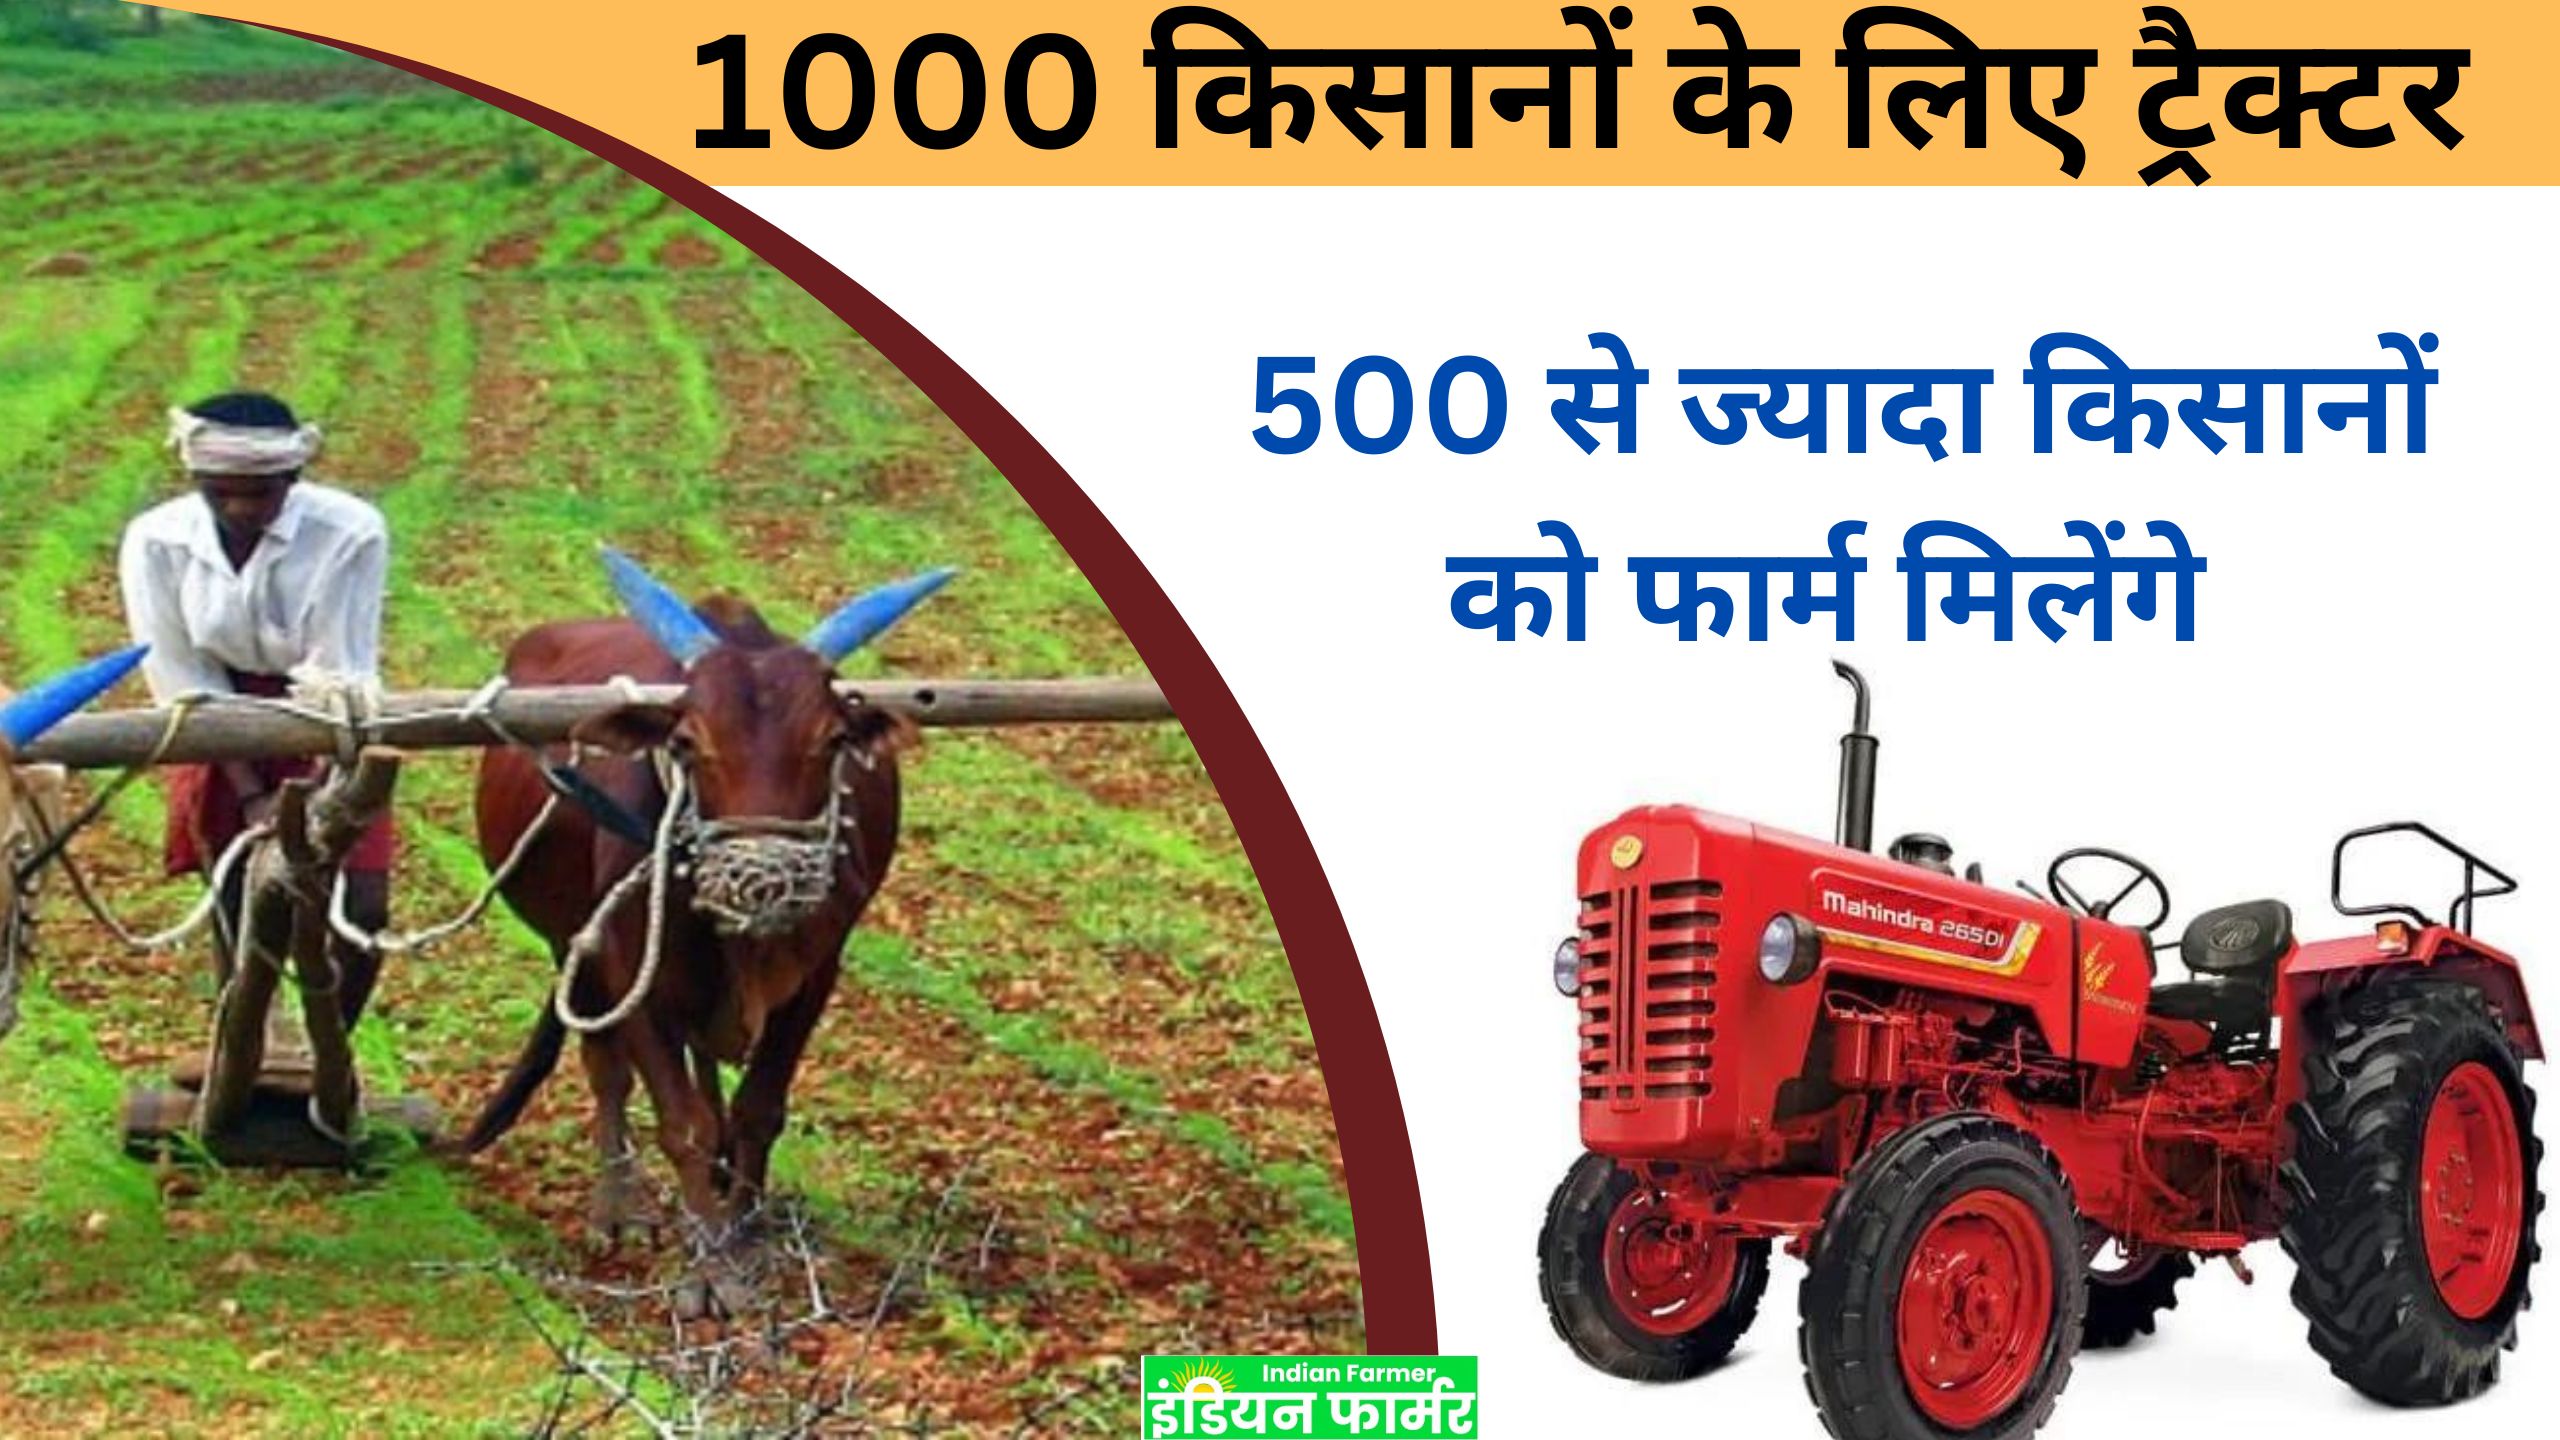 kisan tracet subsidy MHA DBT: सोलापुर जिले में 1000 किसानों के लिए ट्रैक्टर; 500 से ज्यादा किसानों को फार्म मिलेंगे